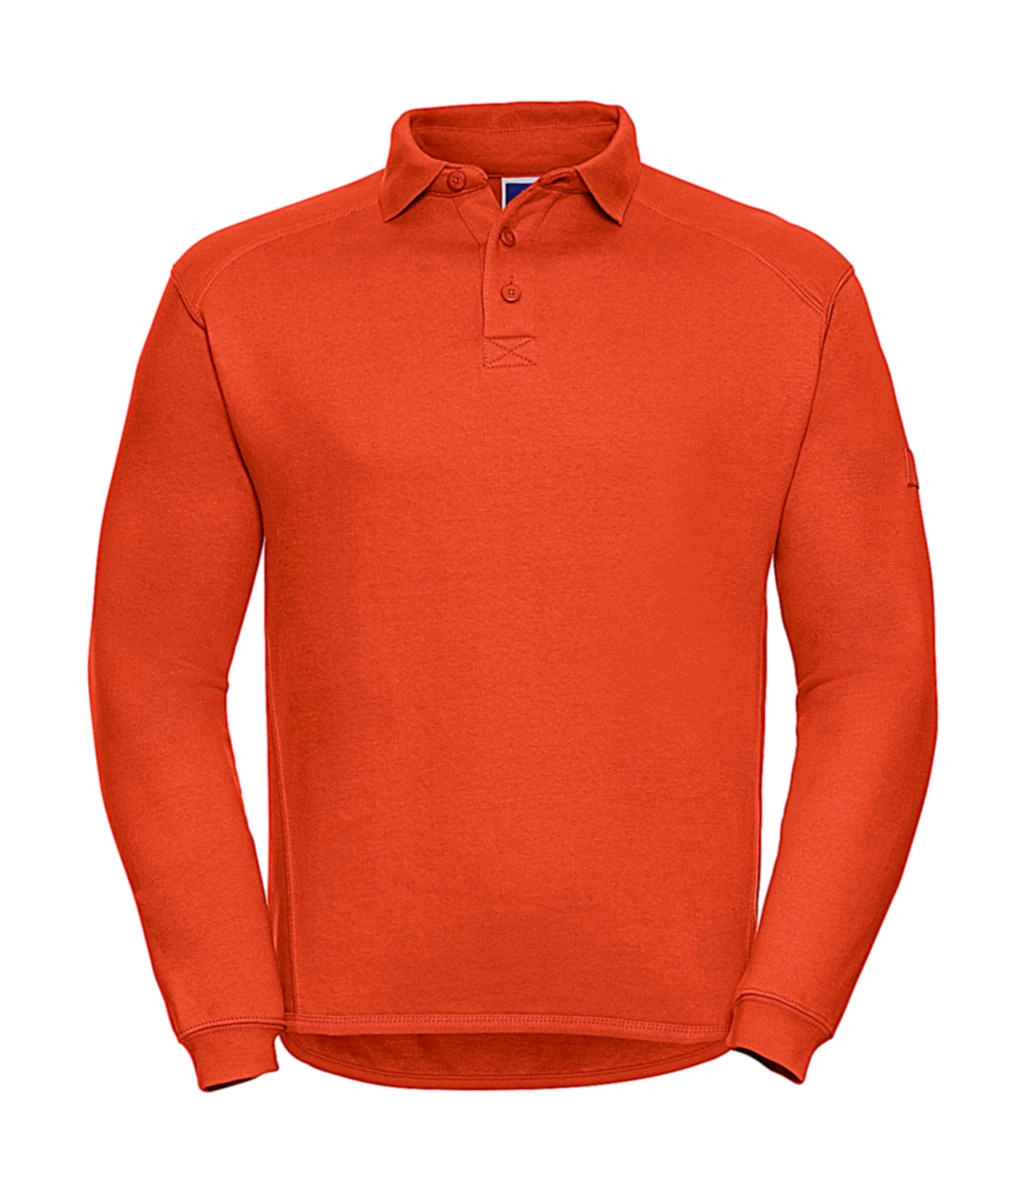 Heavy Duty Collar Sweatshirt zum Besticken und Bedrucken in der Farbe Orange mit Ihren Logo, Schriftzug oder Motiv.